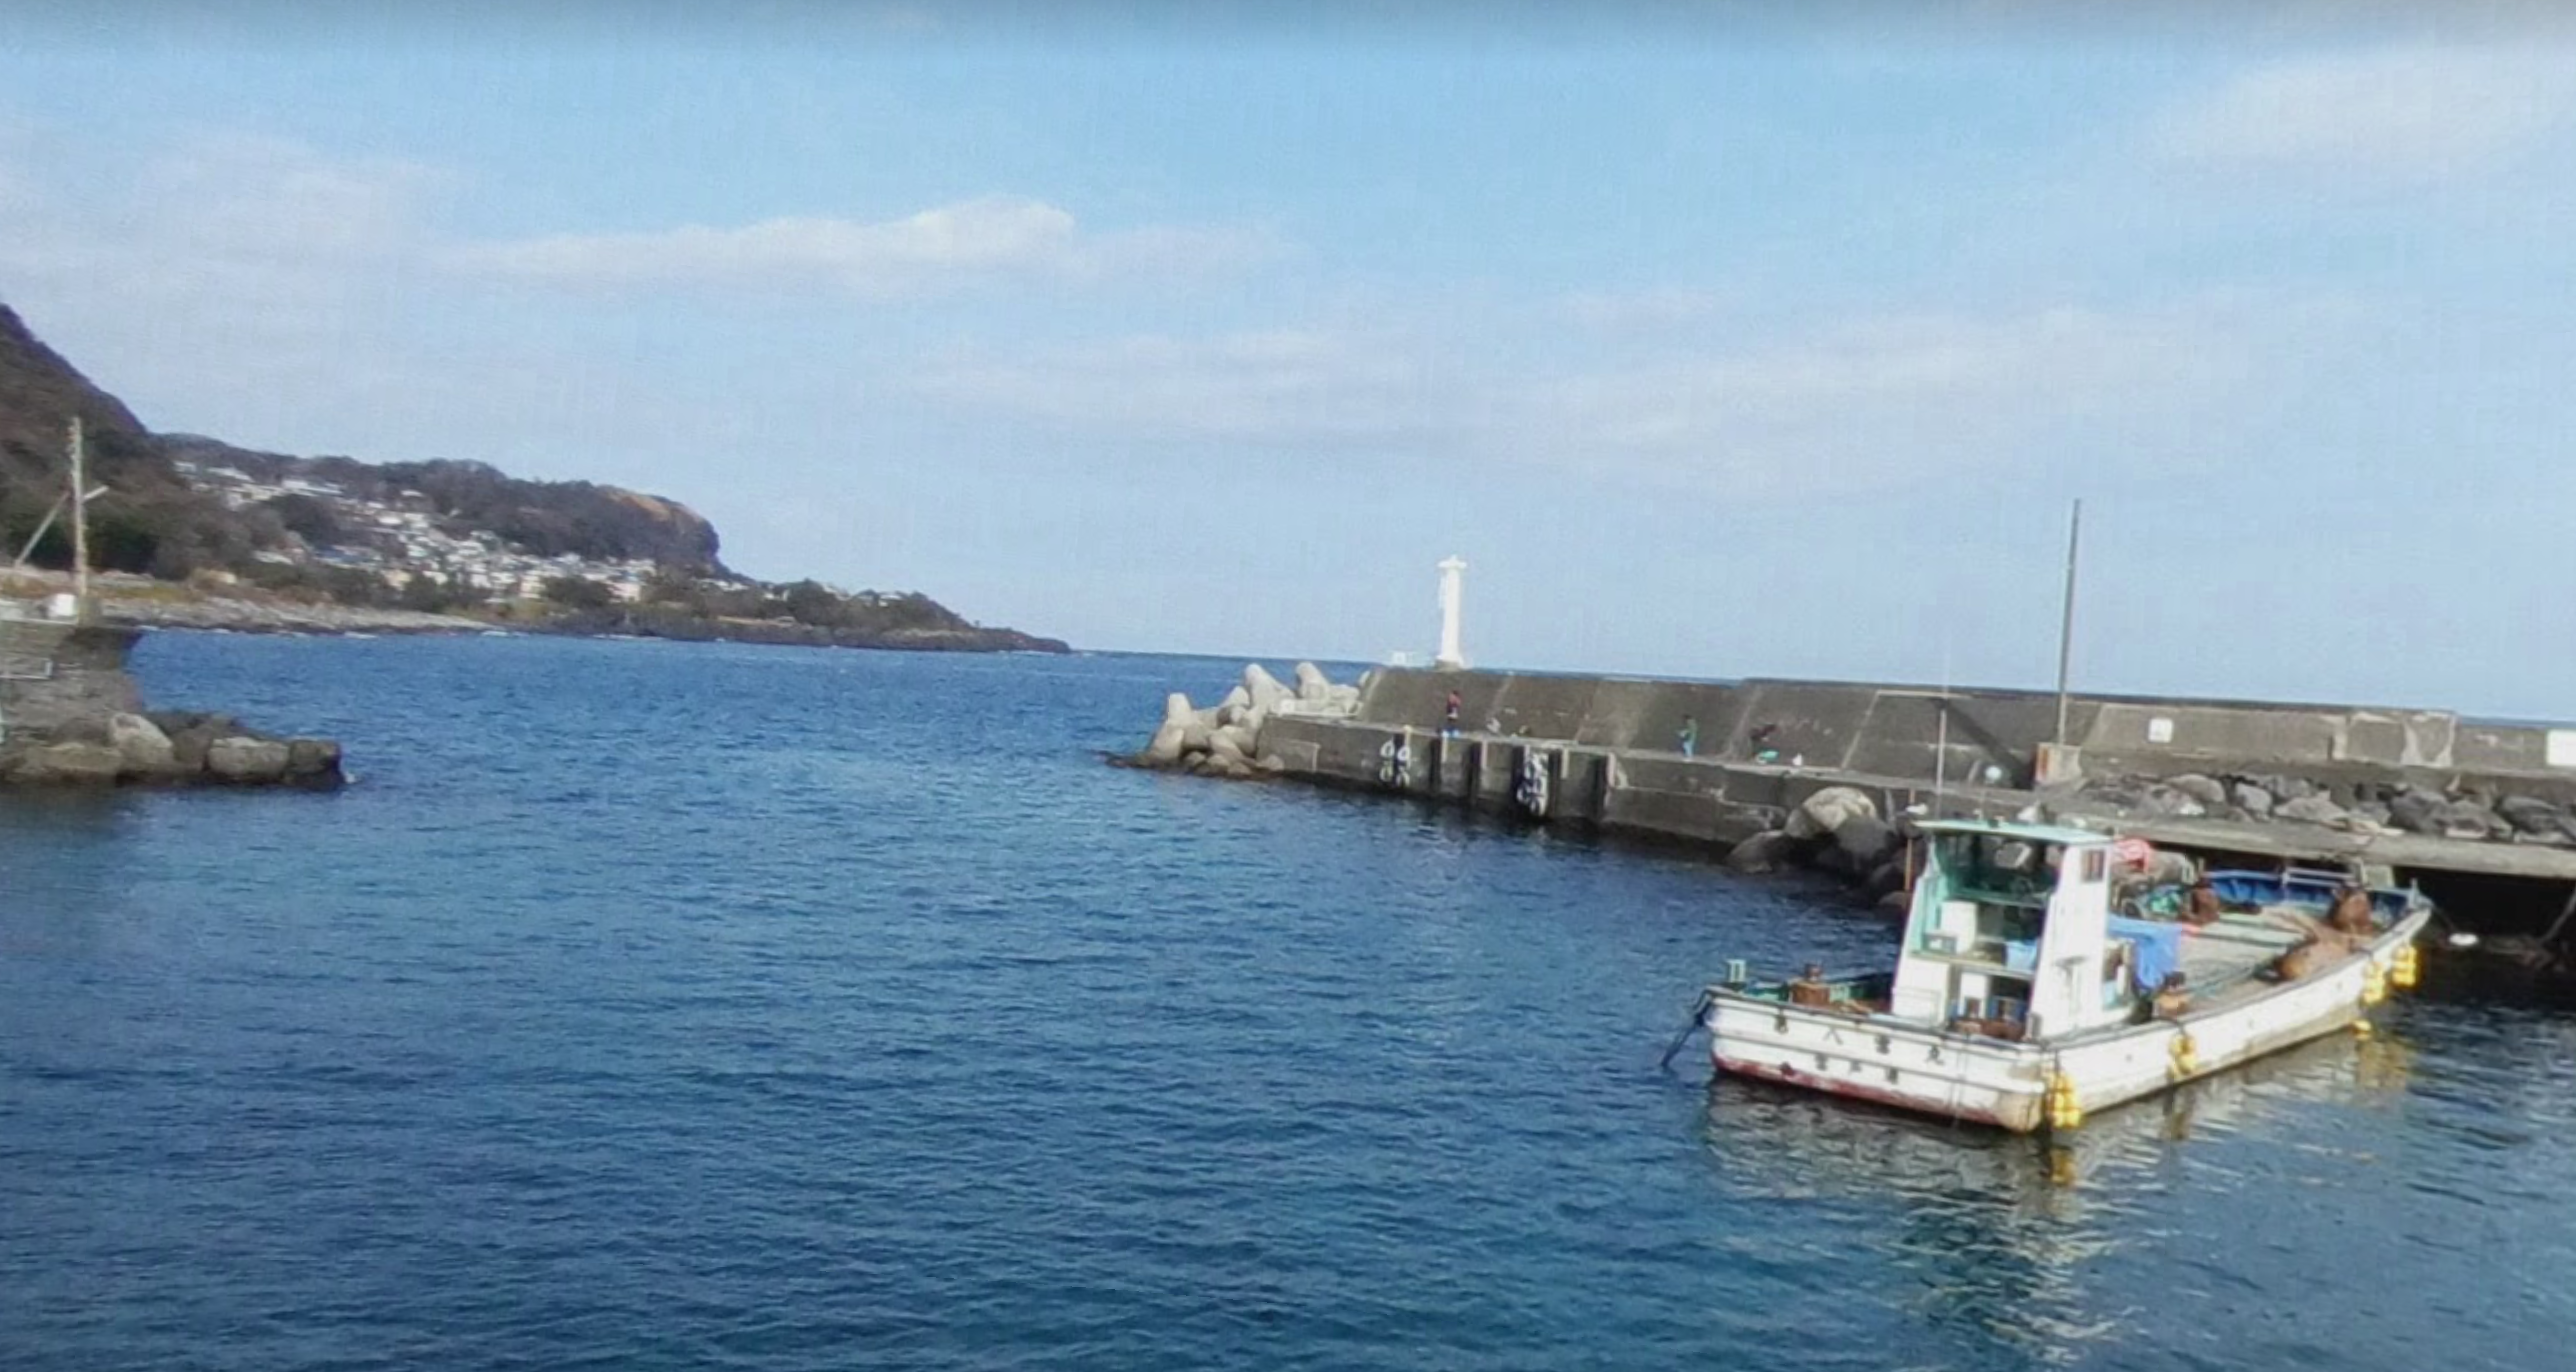 静岡県伊東市 富戸払港 の釣りポイント情報まとめ 隠れた穴場 磯魚からアジ シロギス 釣りマップ